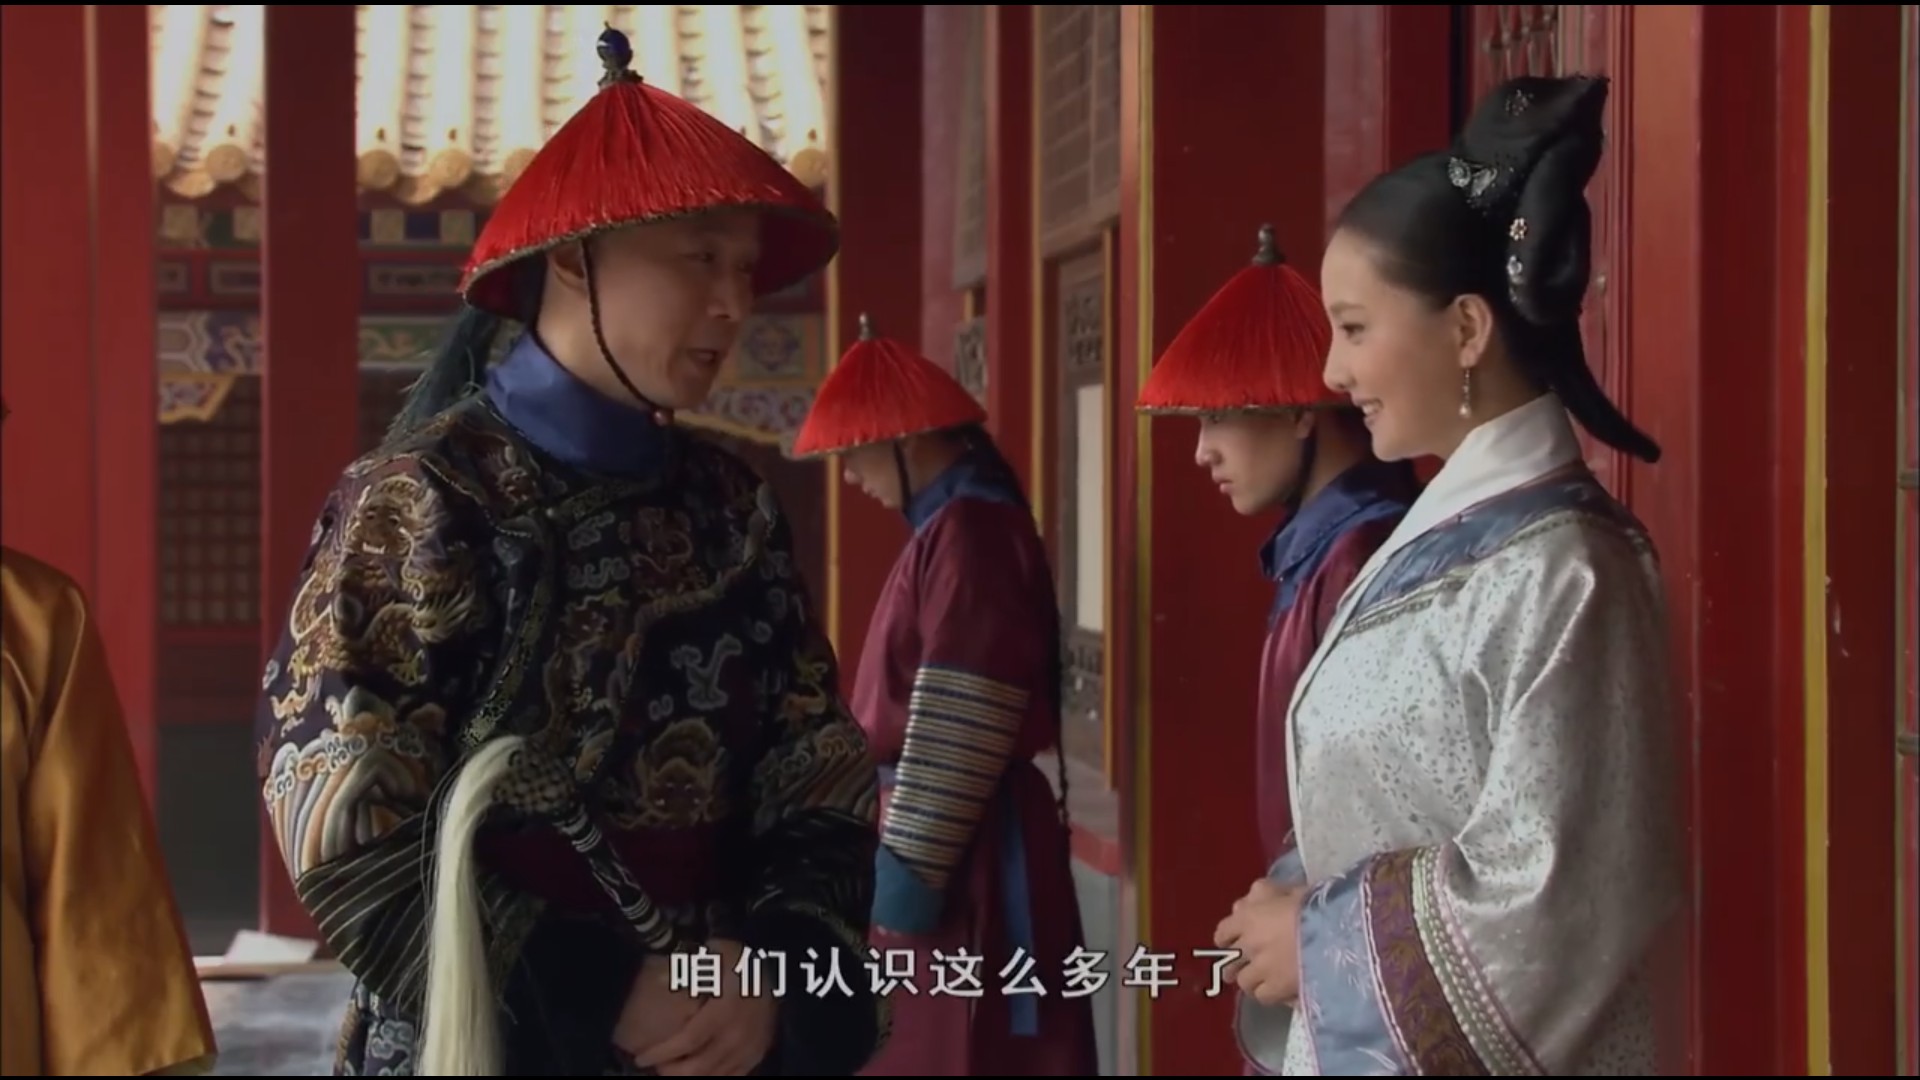 苏培盛—《甄嬛传》里我最喜欢的男人 - 知乎